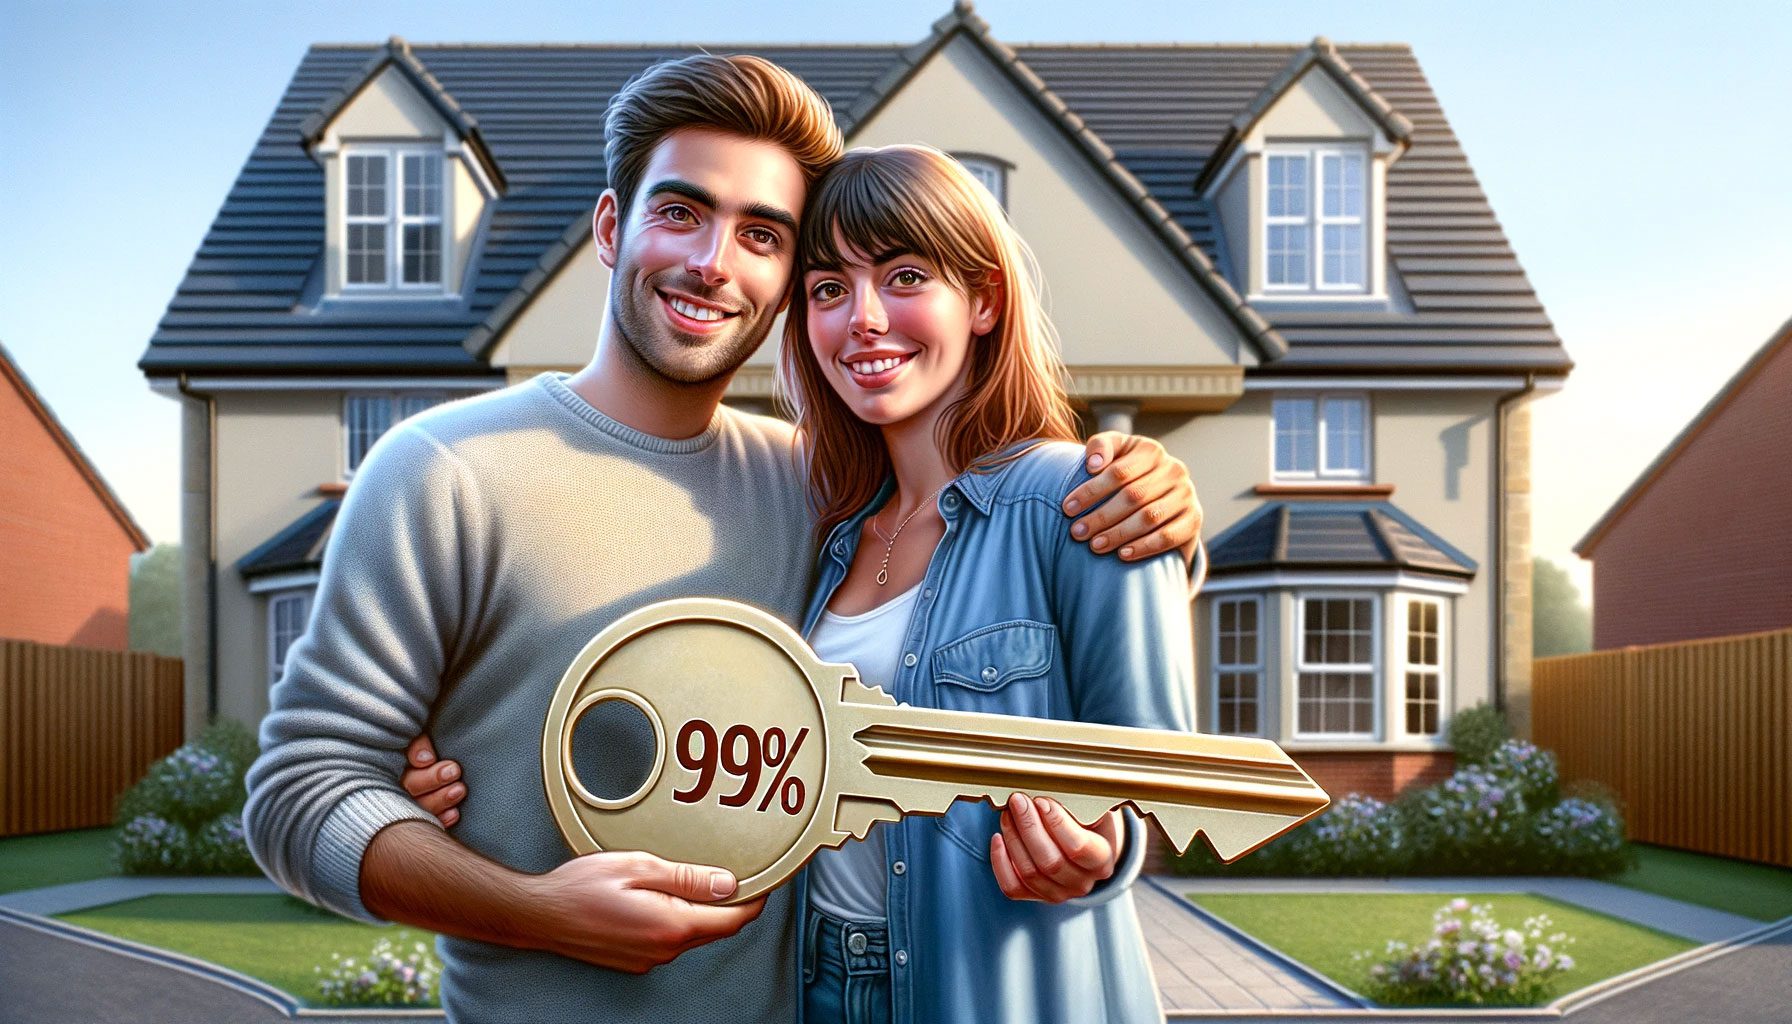 99% mortgage scheme